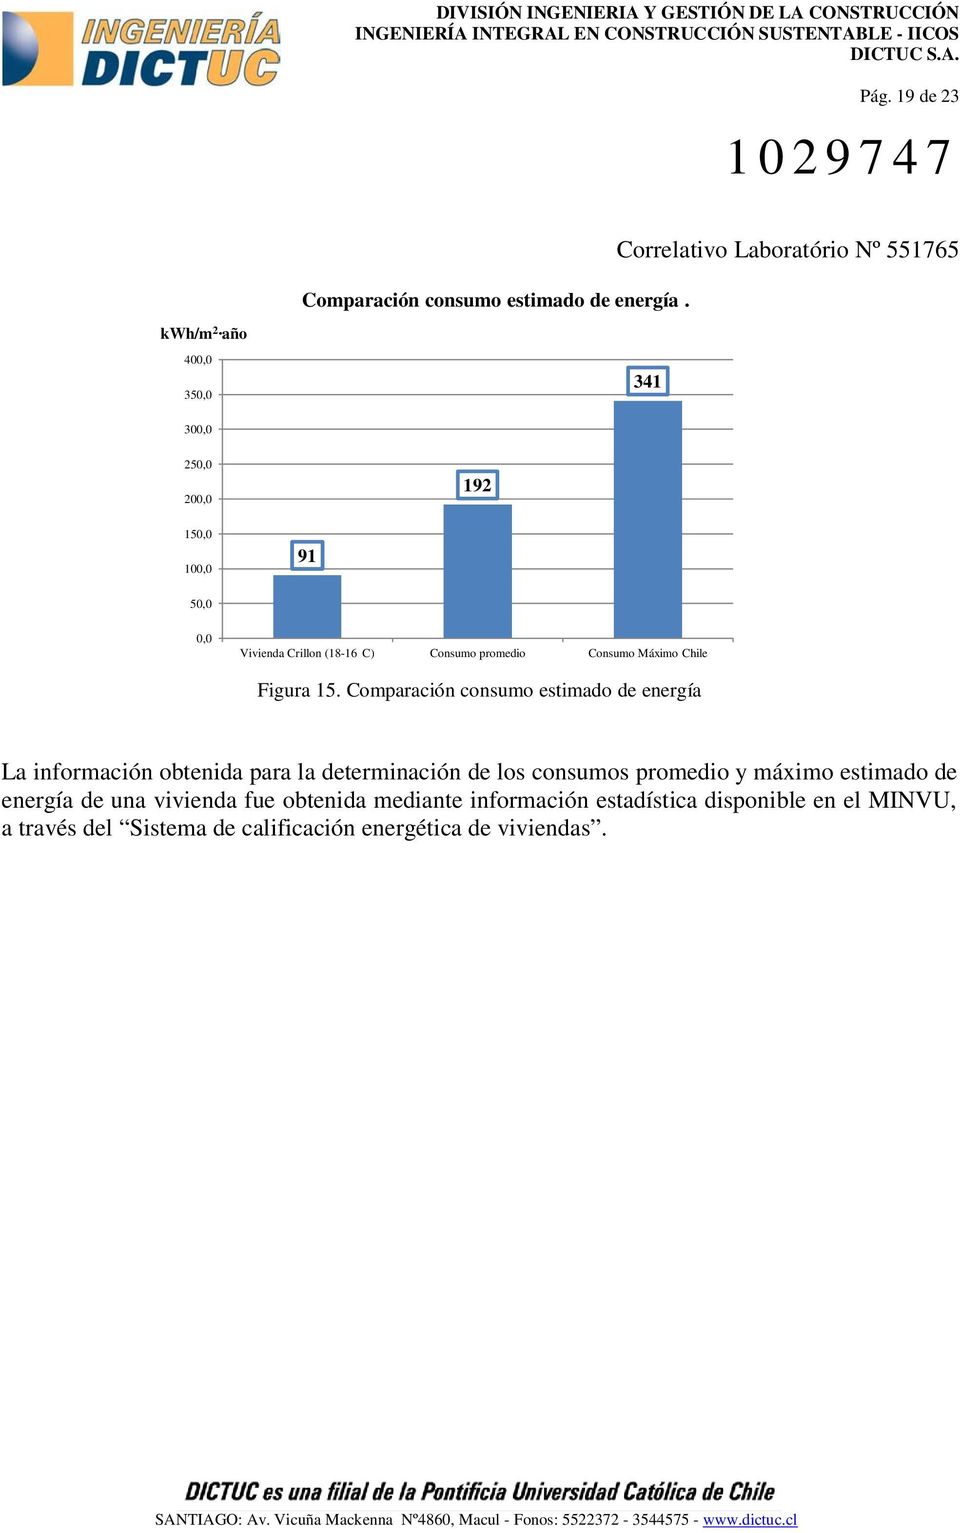 Consumo Máximo Chile Figura 15.